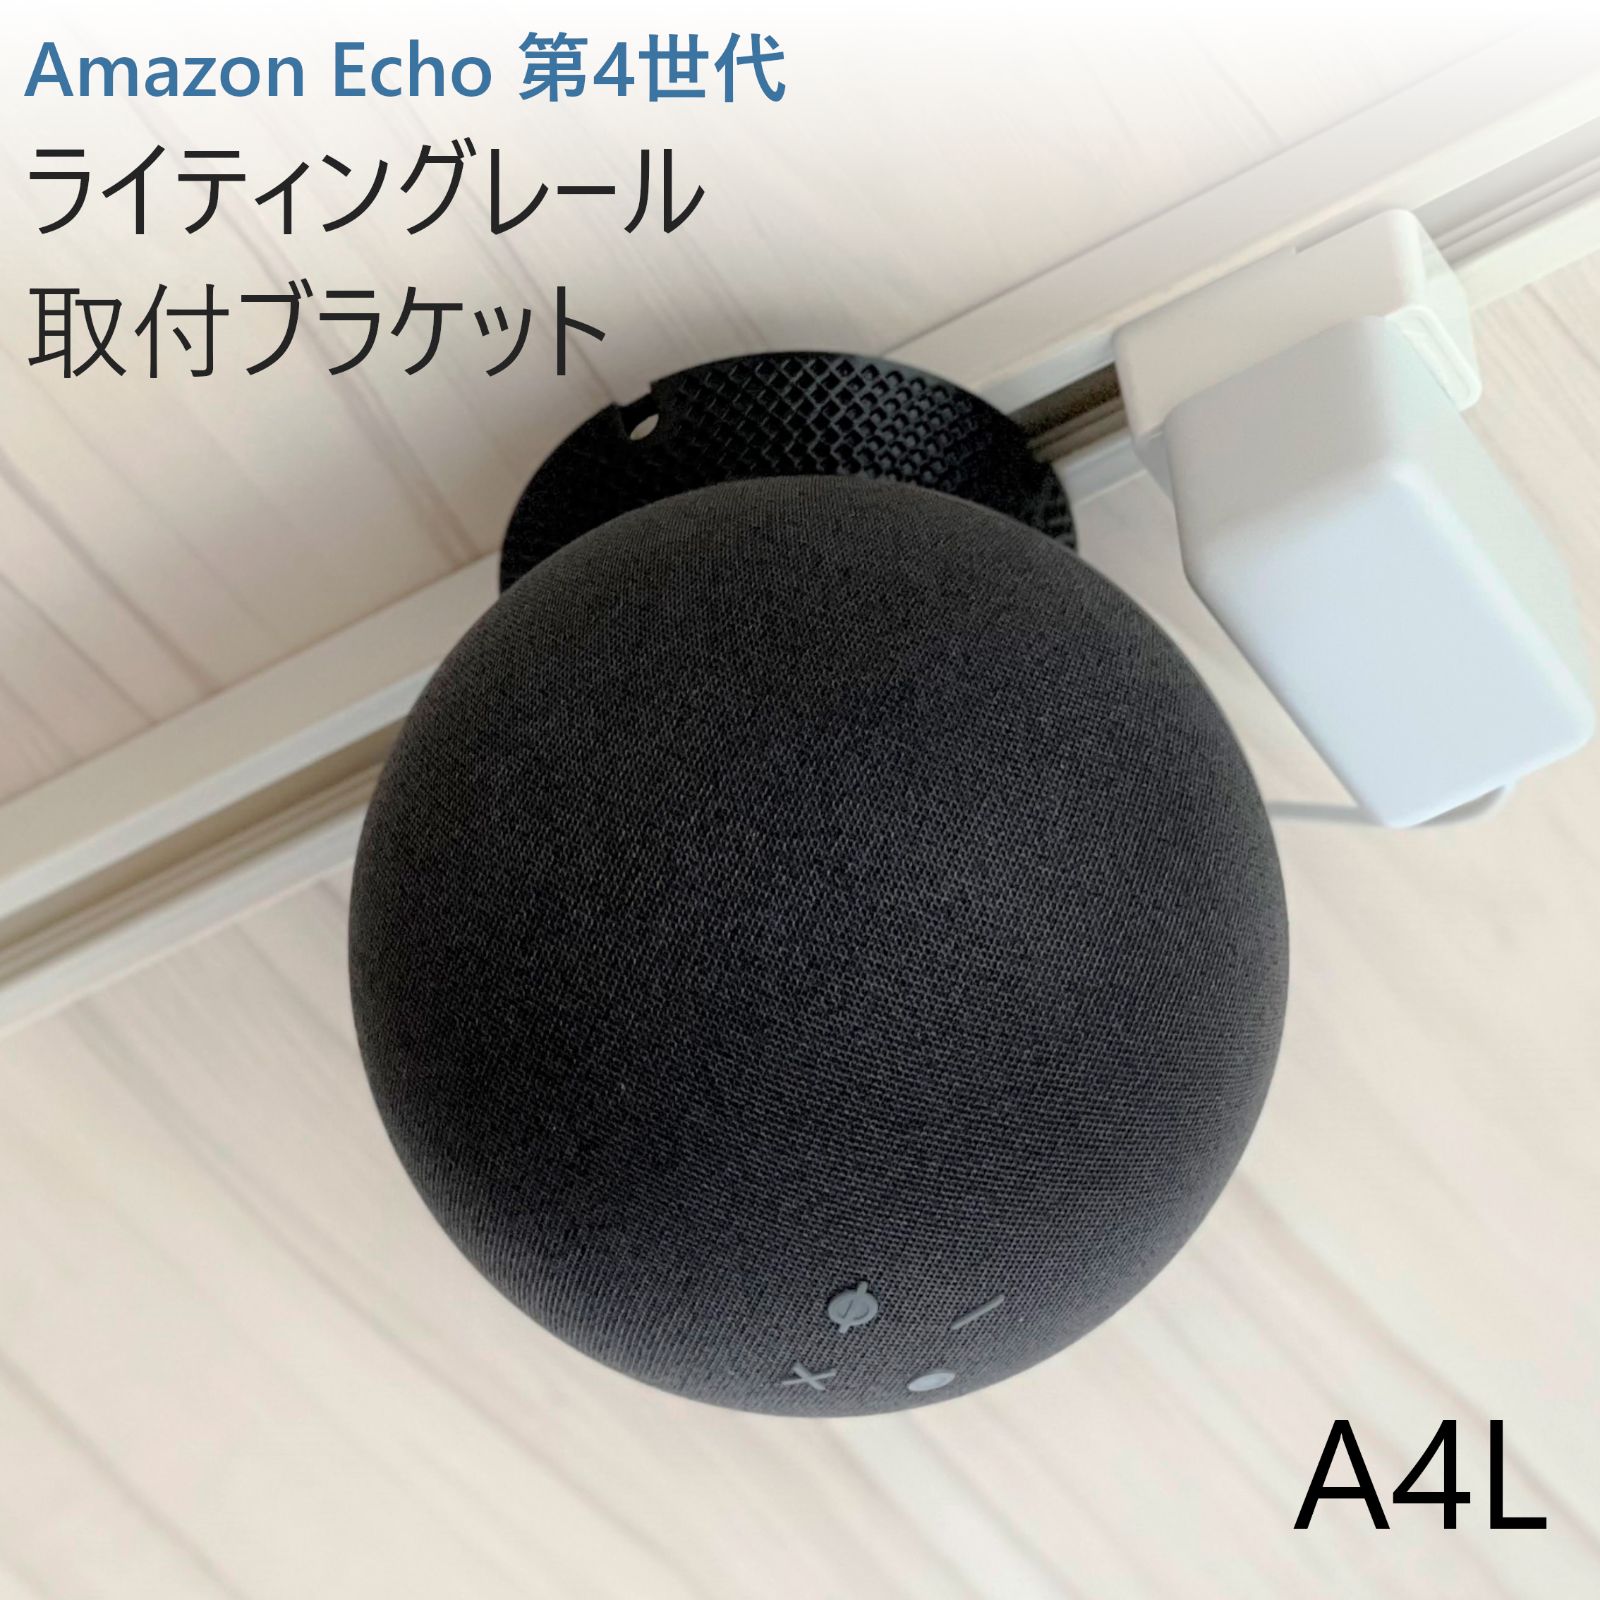 スピーカー Amazon Echo 第4世代 ライティングレール取付ブラケット[A4L]□新発売□